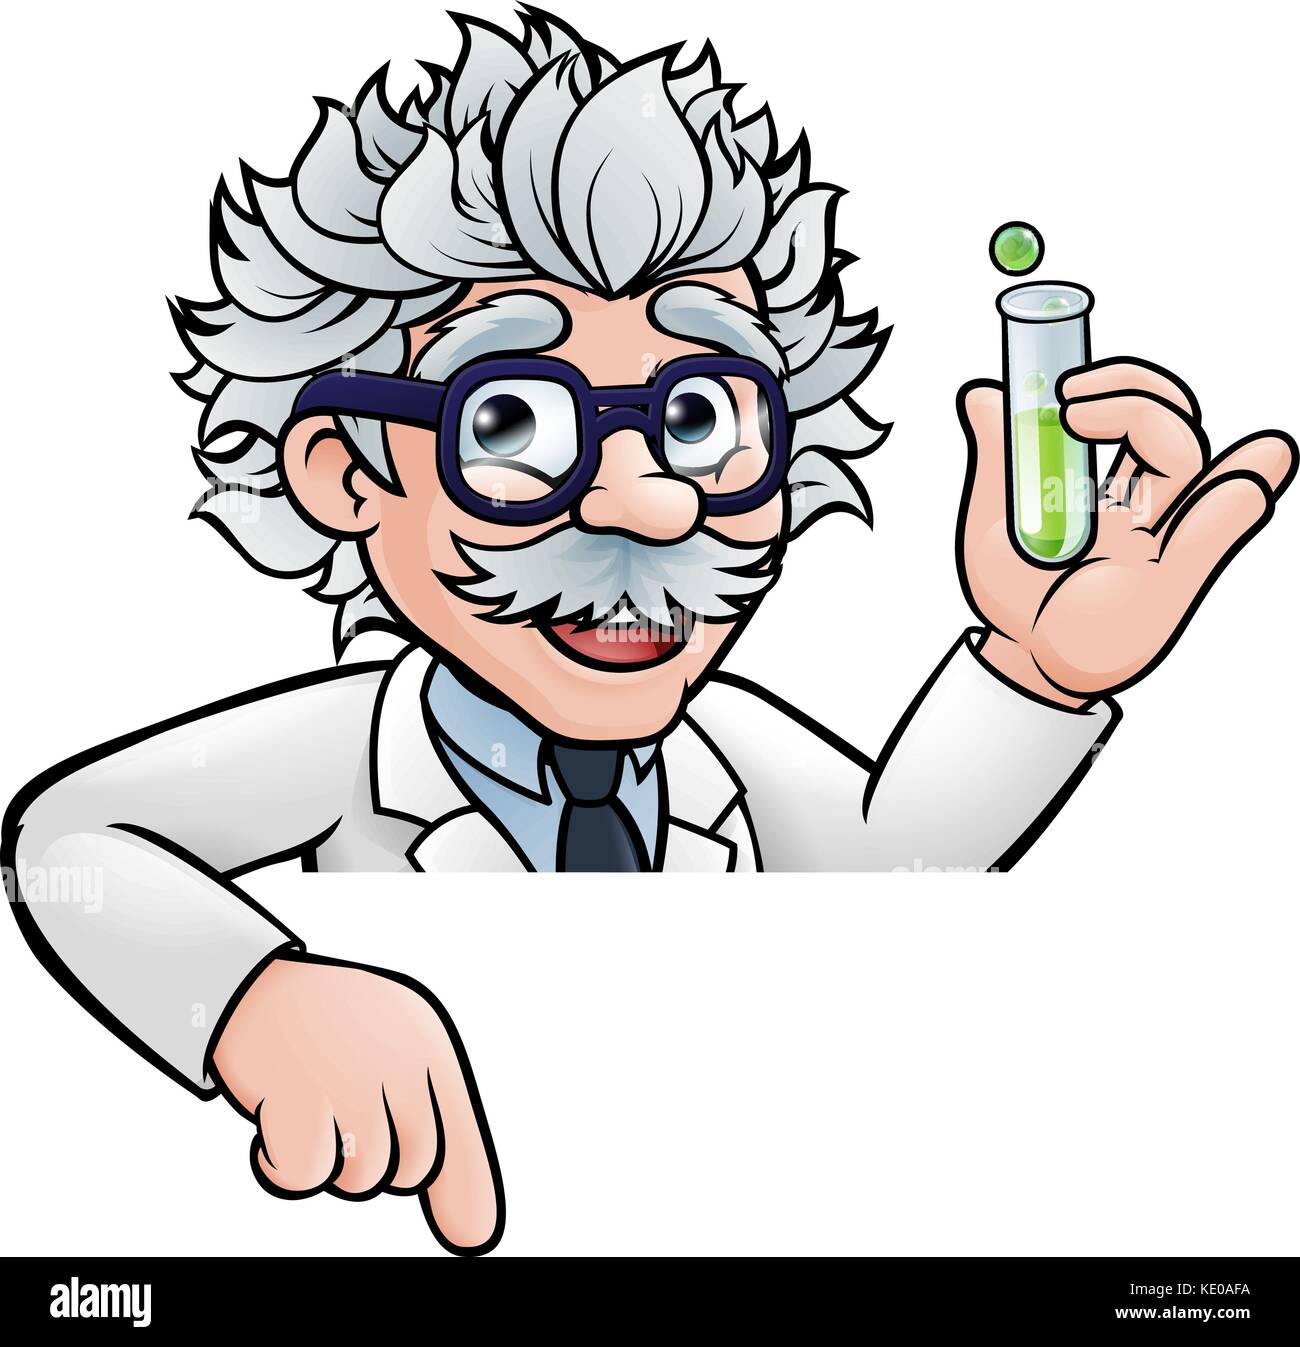 Wissenschaftler-Cartoon-Figur hält Reagenzglas Stock Vektor